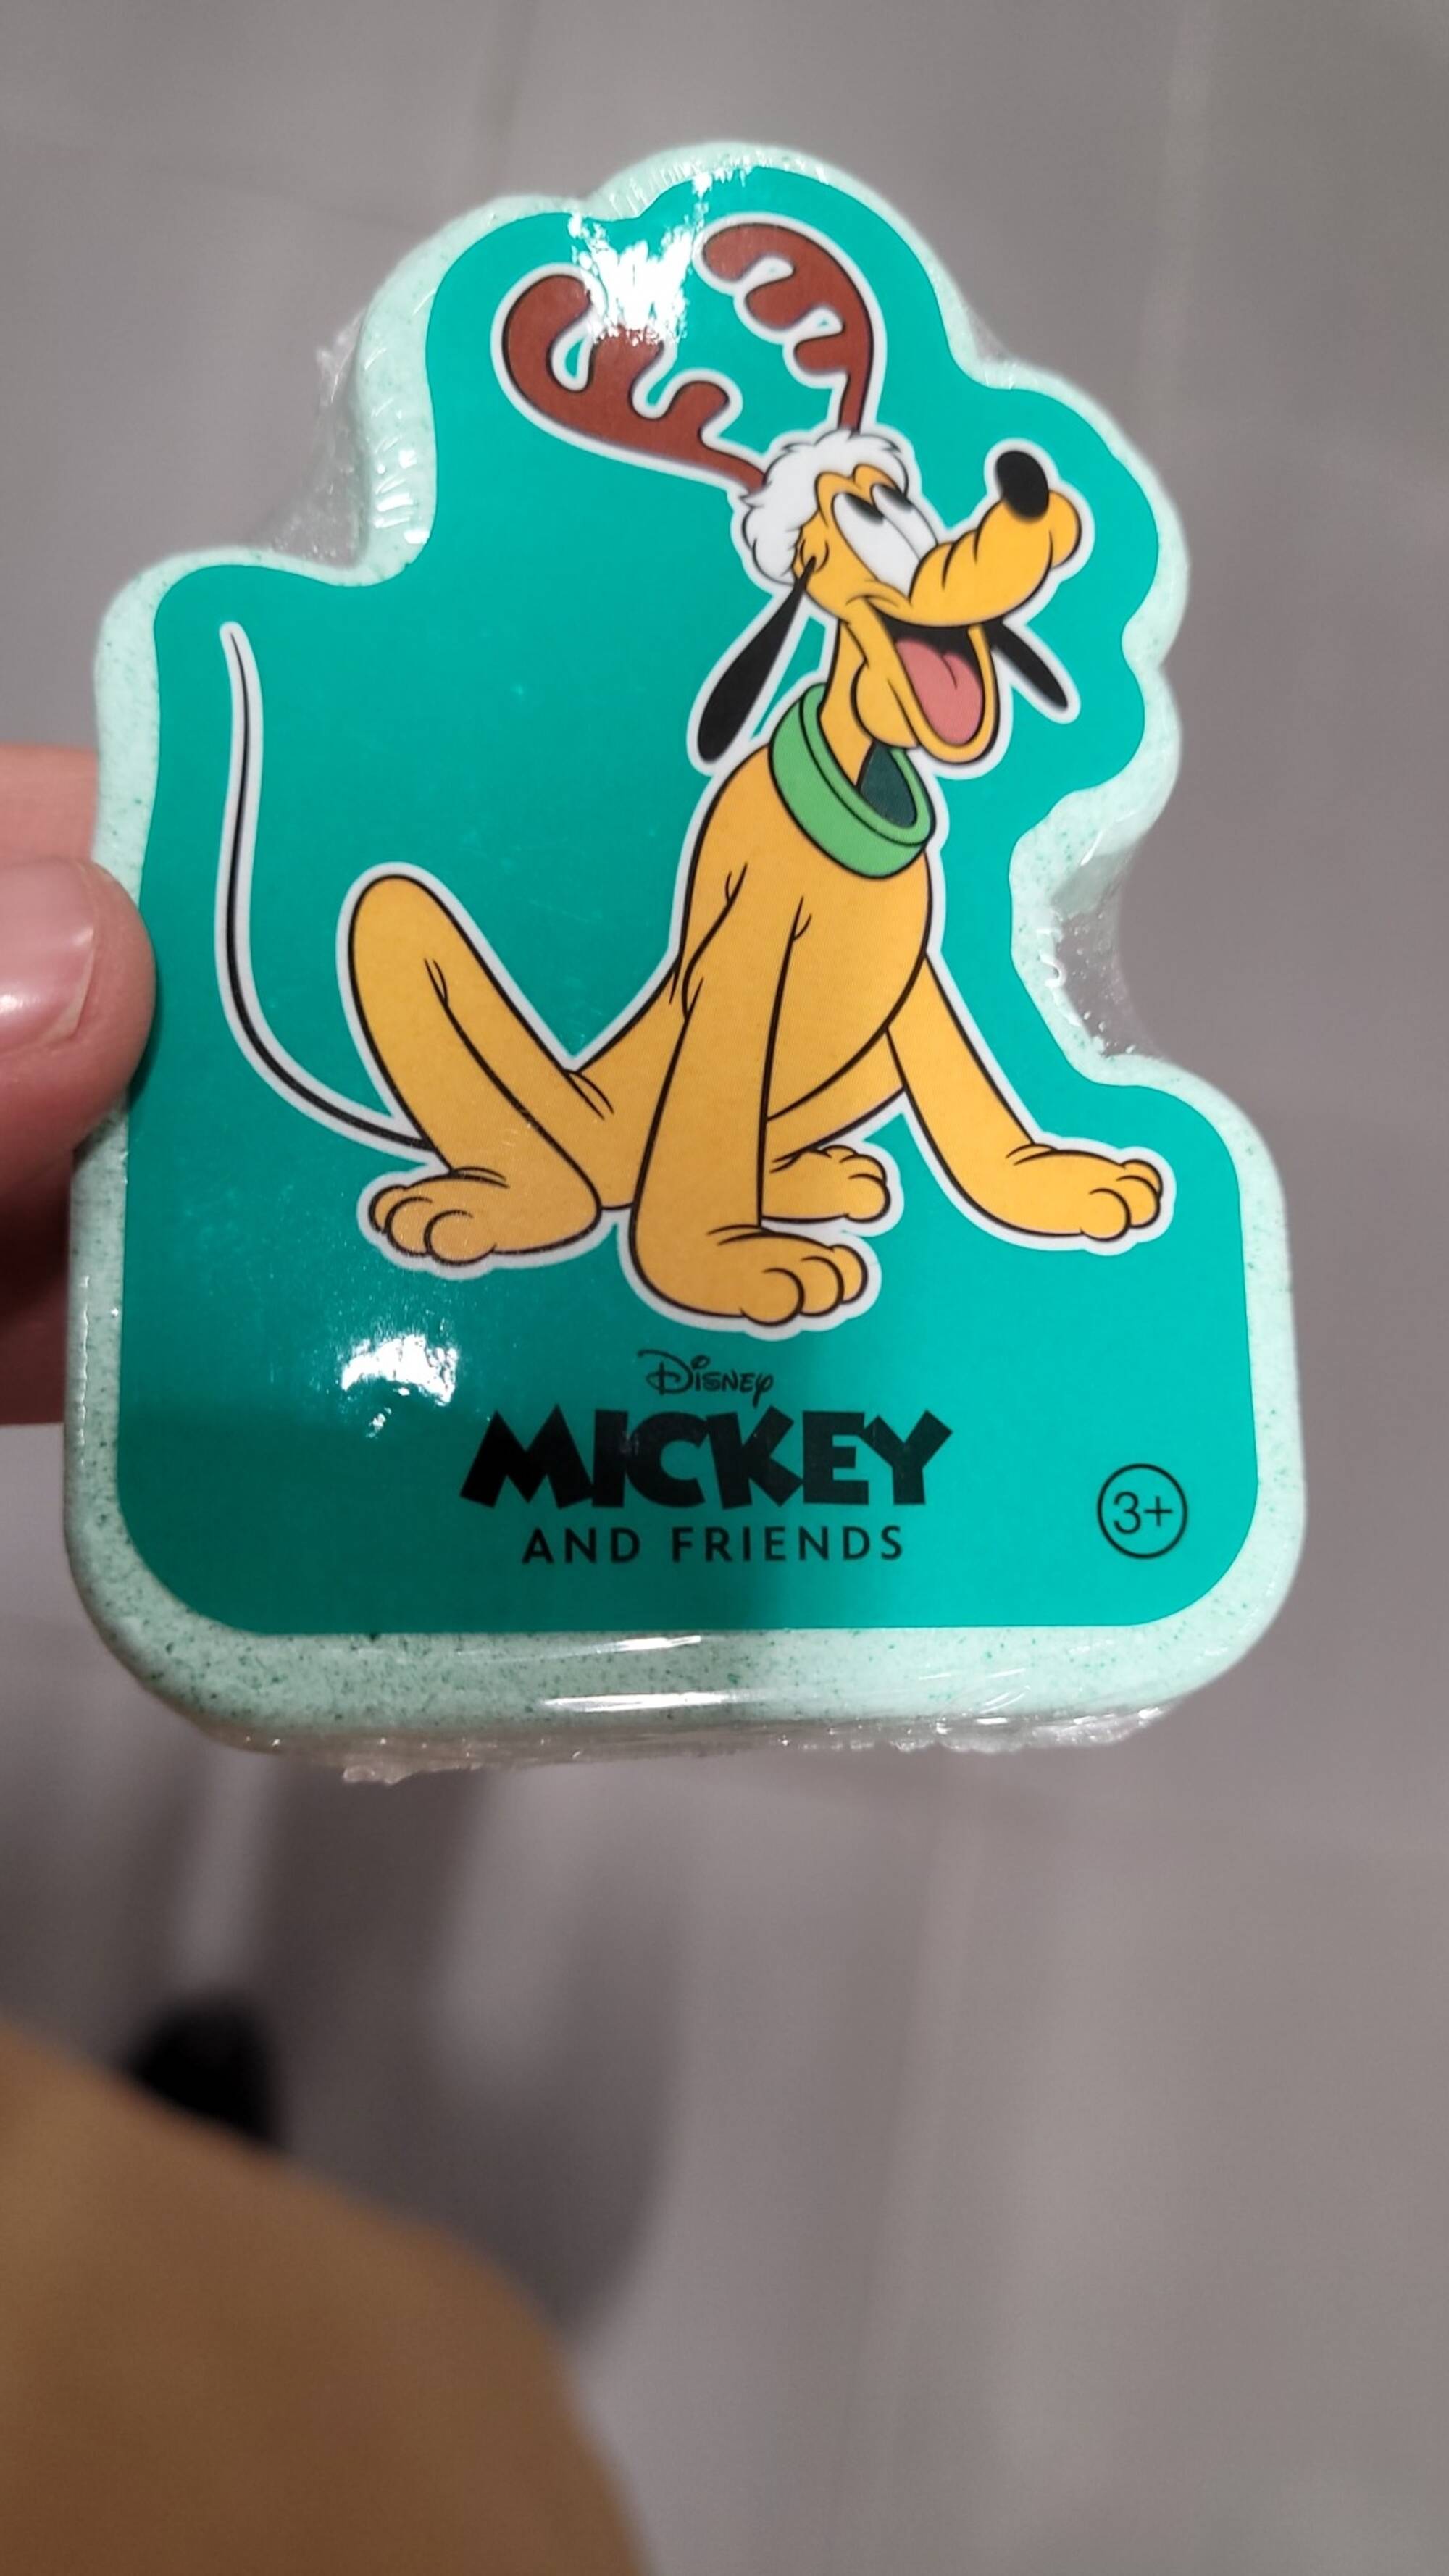 DISNEY - Mickey and friends - Bath fizzer